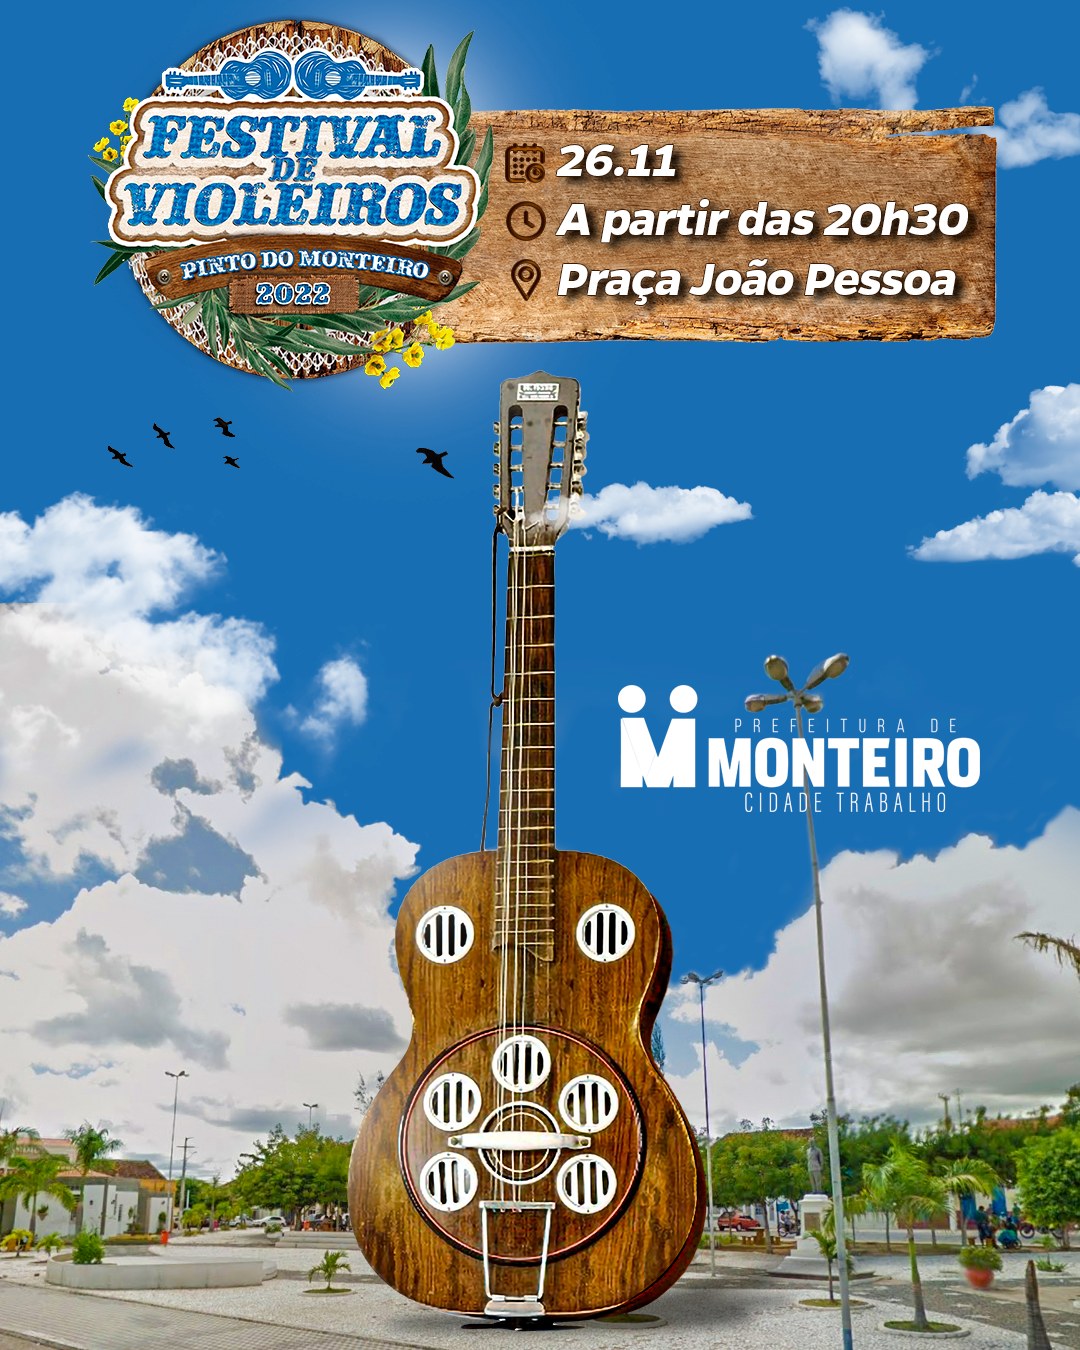 314947558_496675325831889_6828791342543724348_n Monteiro reúne maiores nomes da cantoria no Festival de Violeiros Pinto de Monteiro